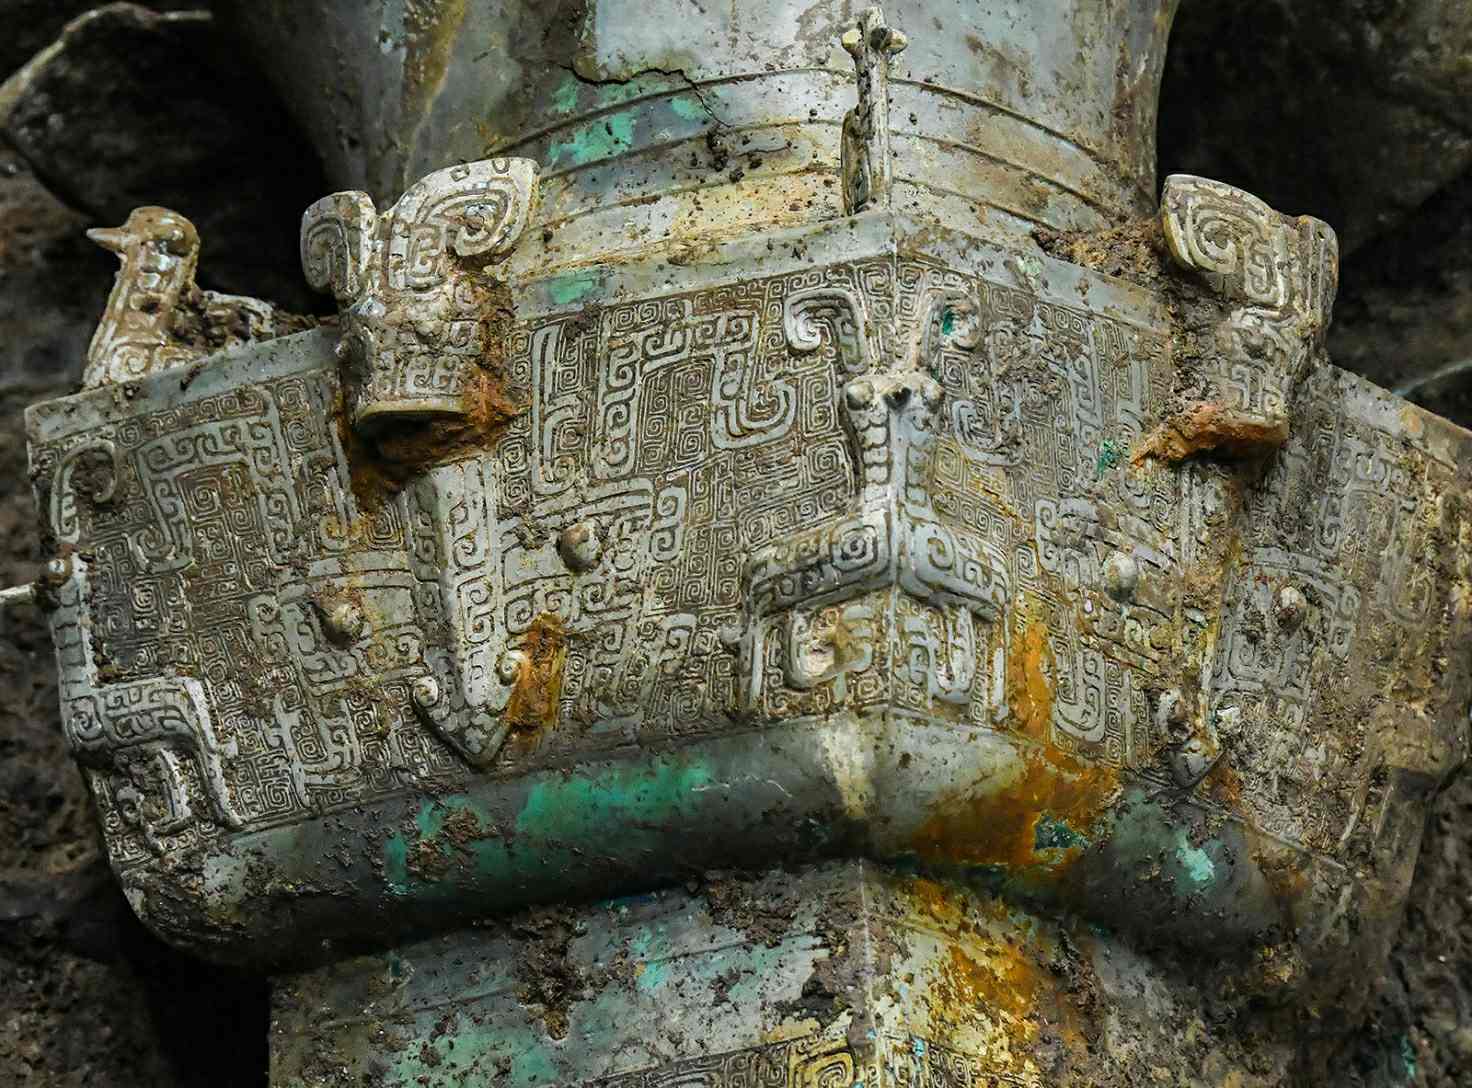 Културни реликви са открити в жертвената яма номер 3 на мястото на руините Сансингдуй в Деян, провинция Съчуан, Китай, 20 март 2021 г.